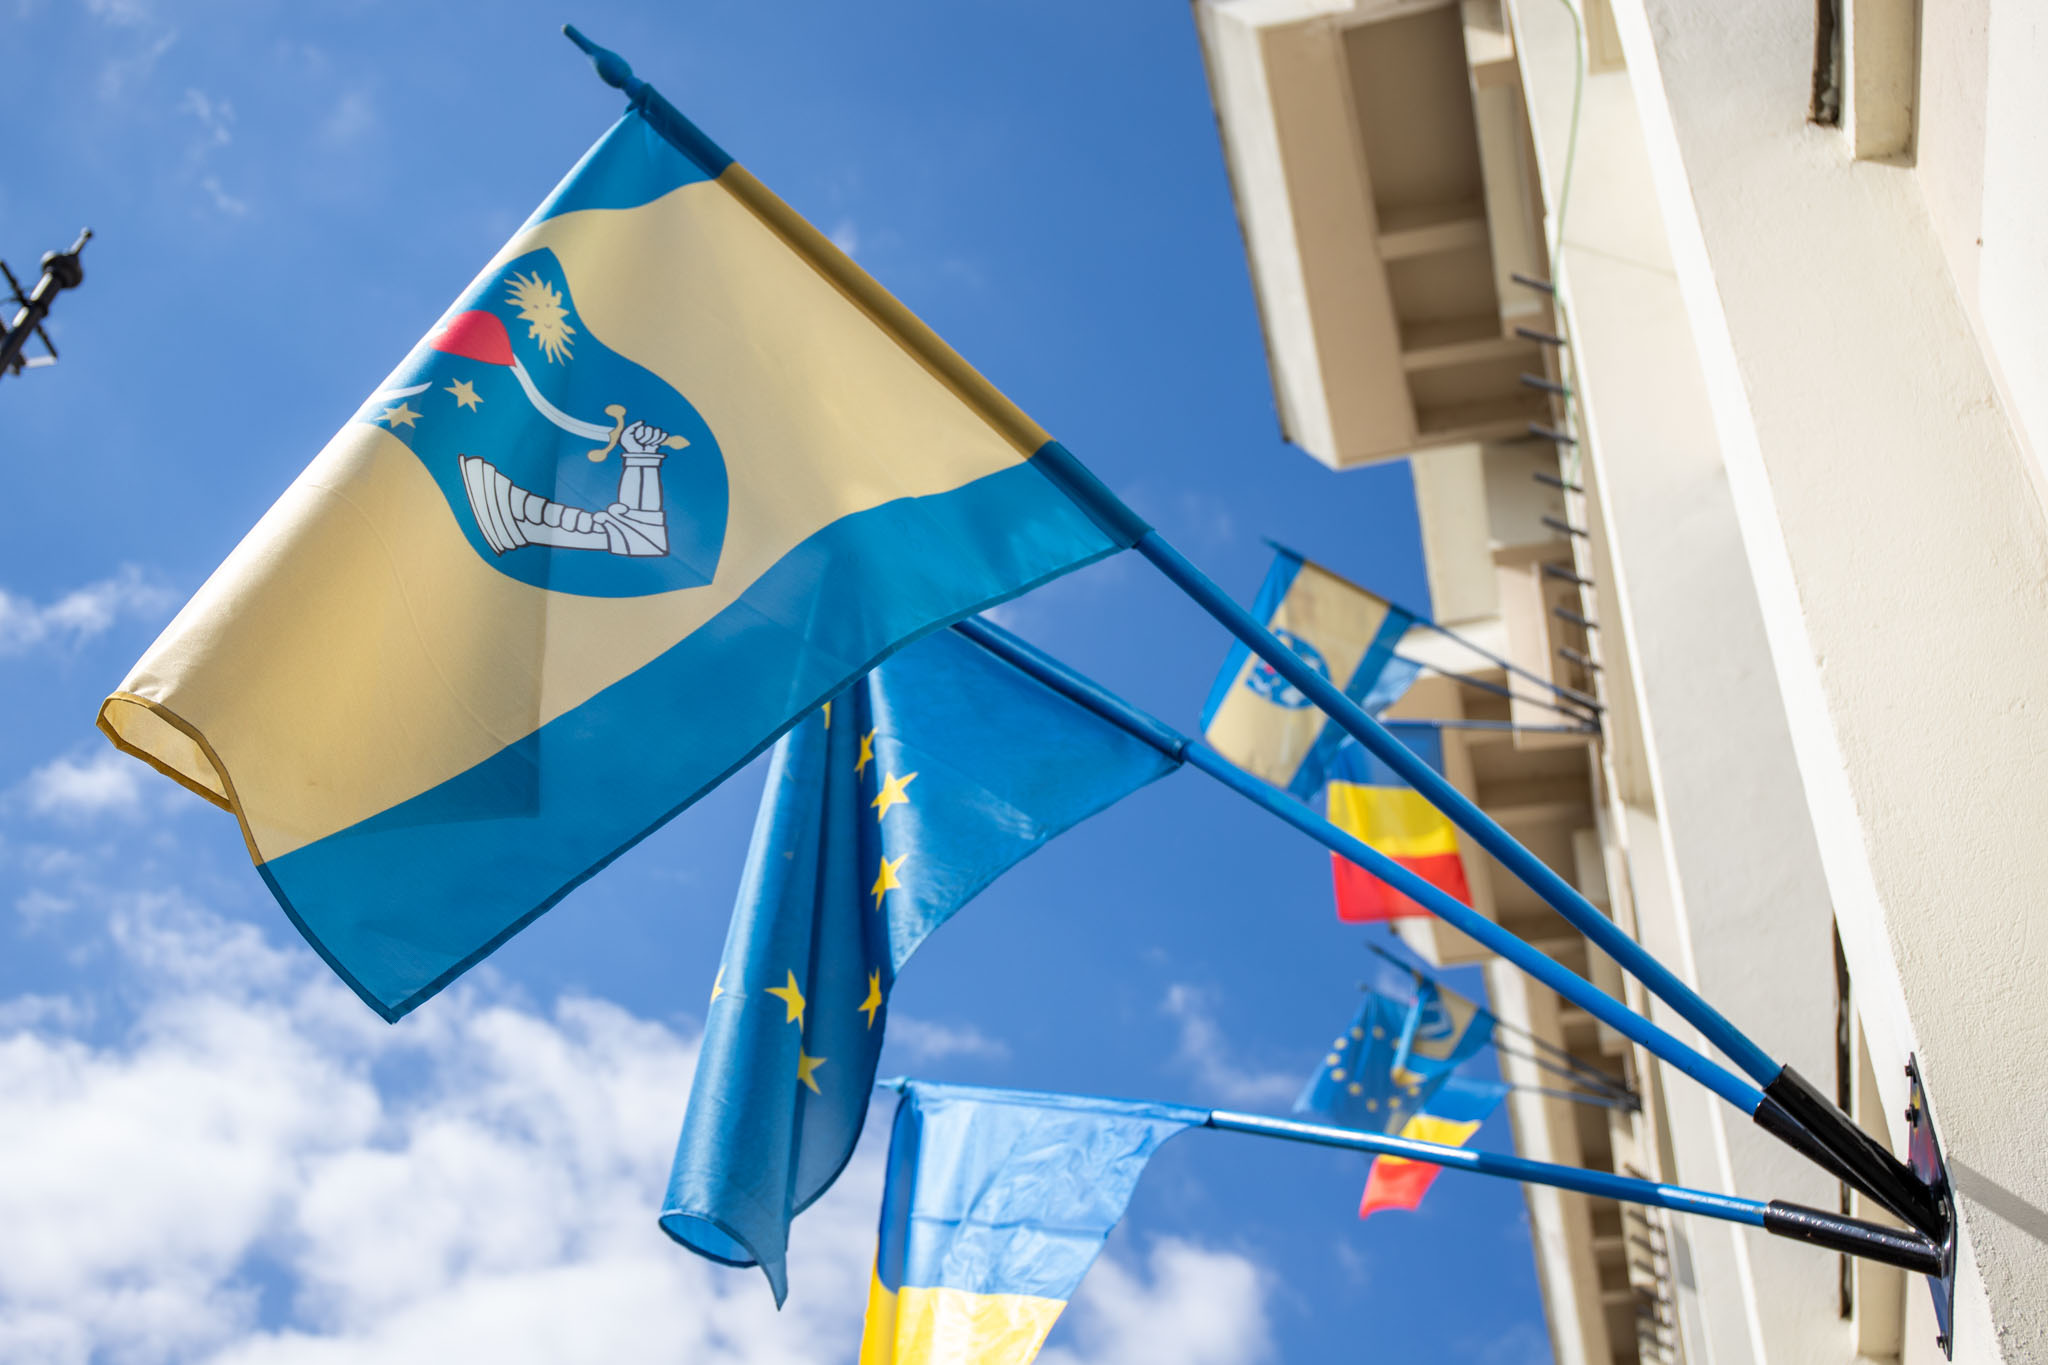 Steagul oficial al județului Covasna, arborat pe fațada Consiliului Județean